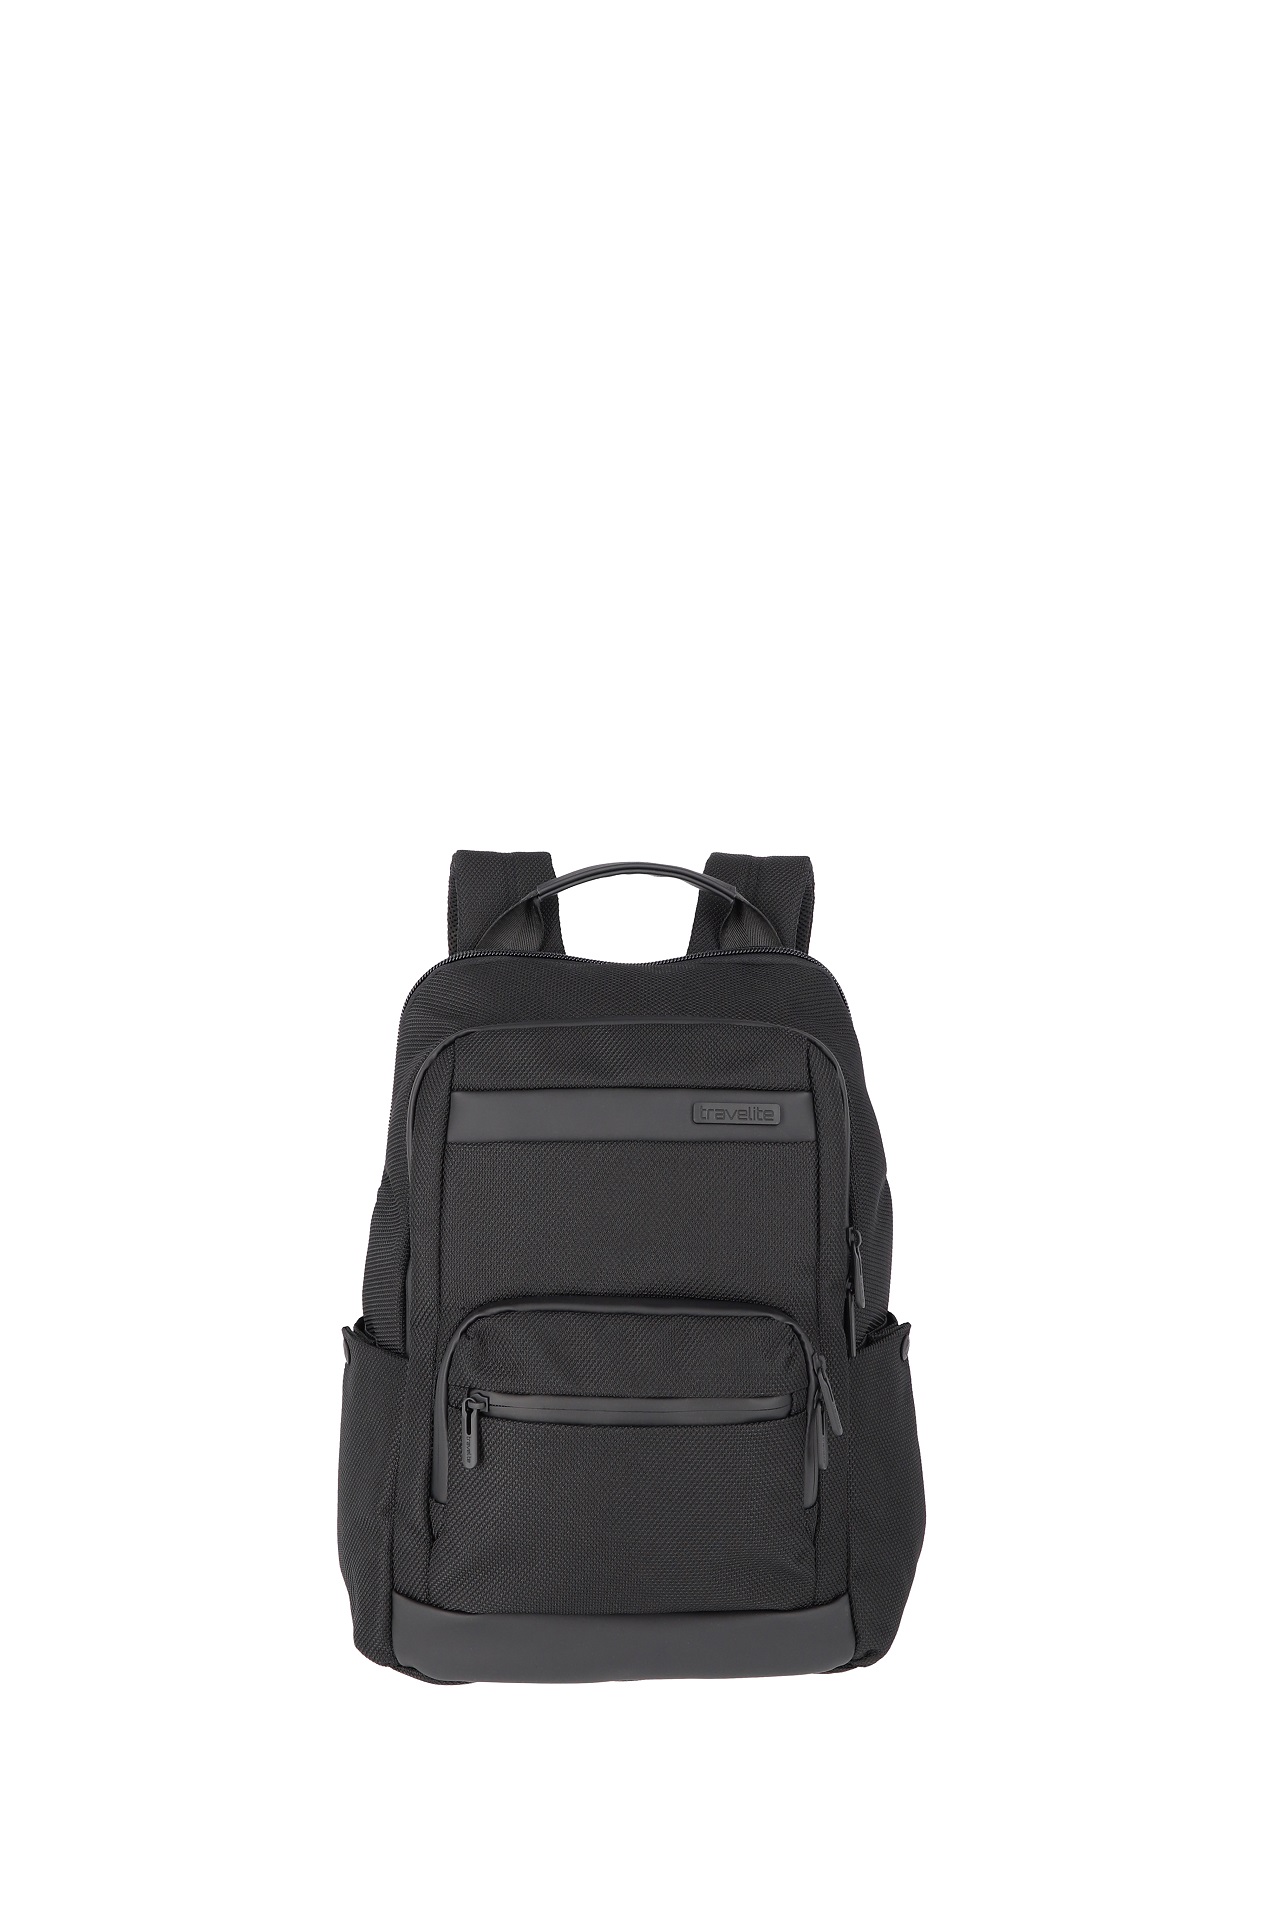 E-shop Travelite Meet Backpack exp Black